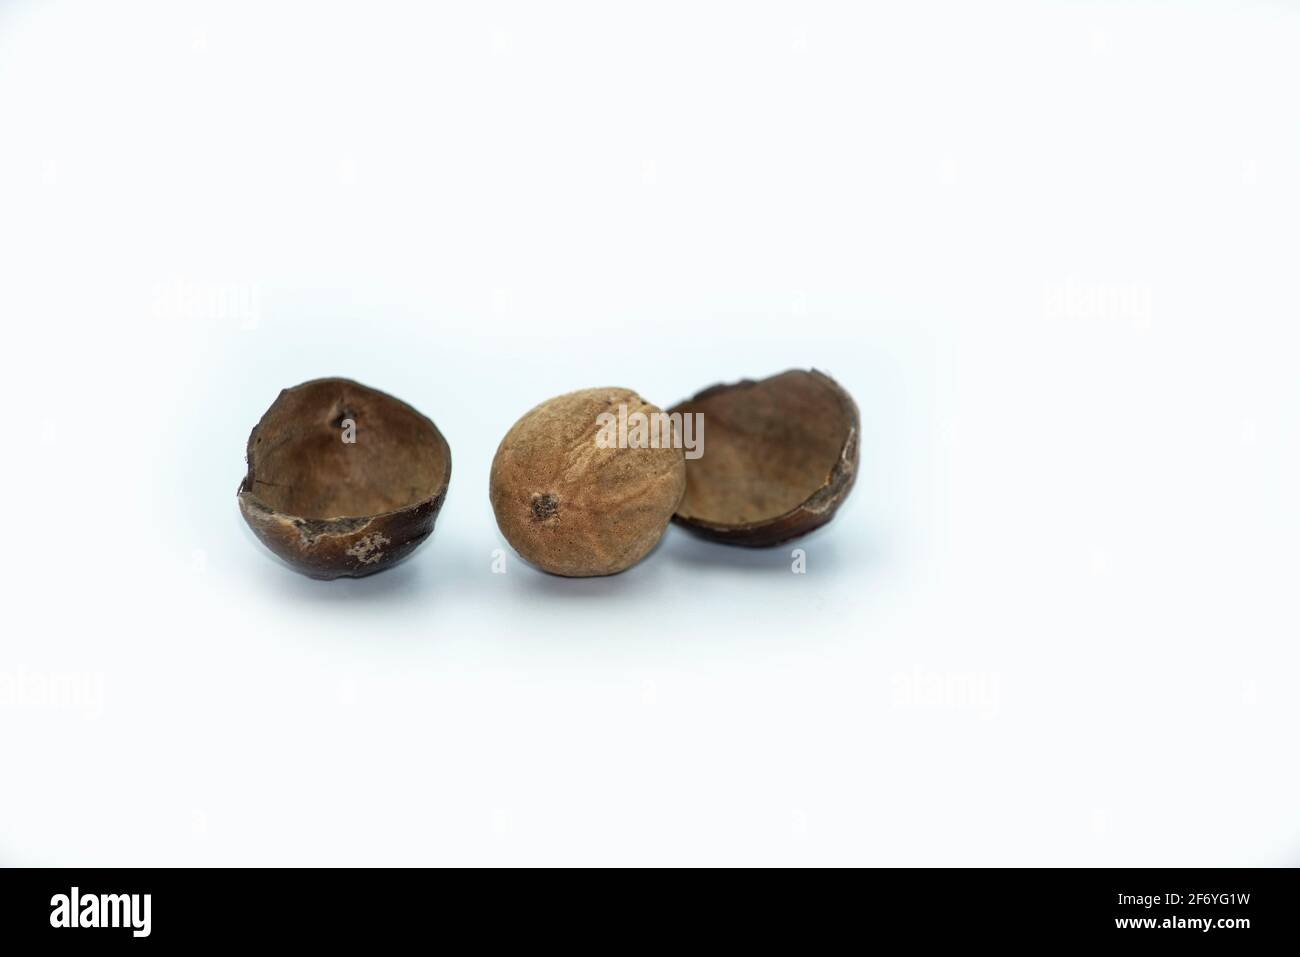 Mumbai , India - 15 March 2021, Nutmeg or Jaifal Spice on white background at Mumbai Maharashtra India Stock Photo